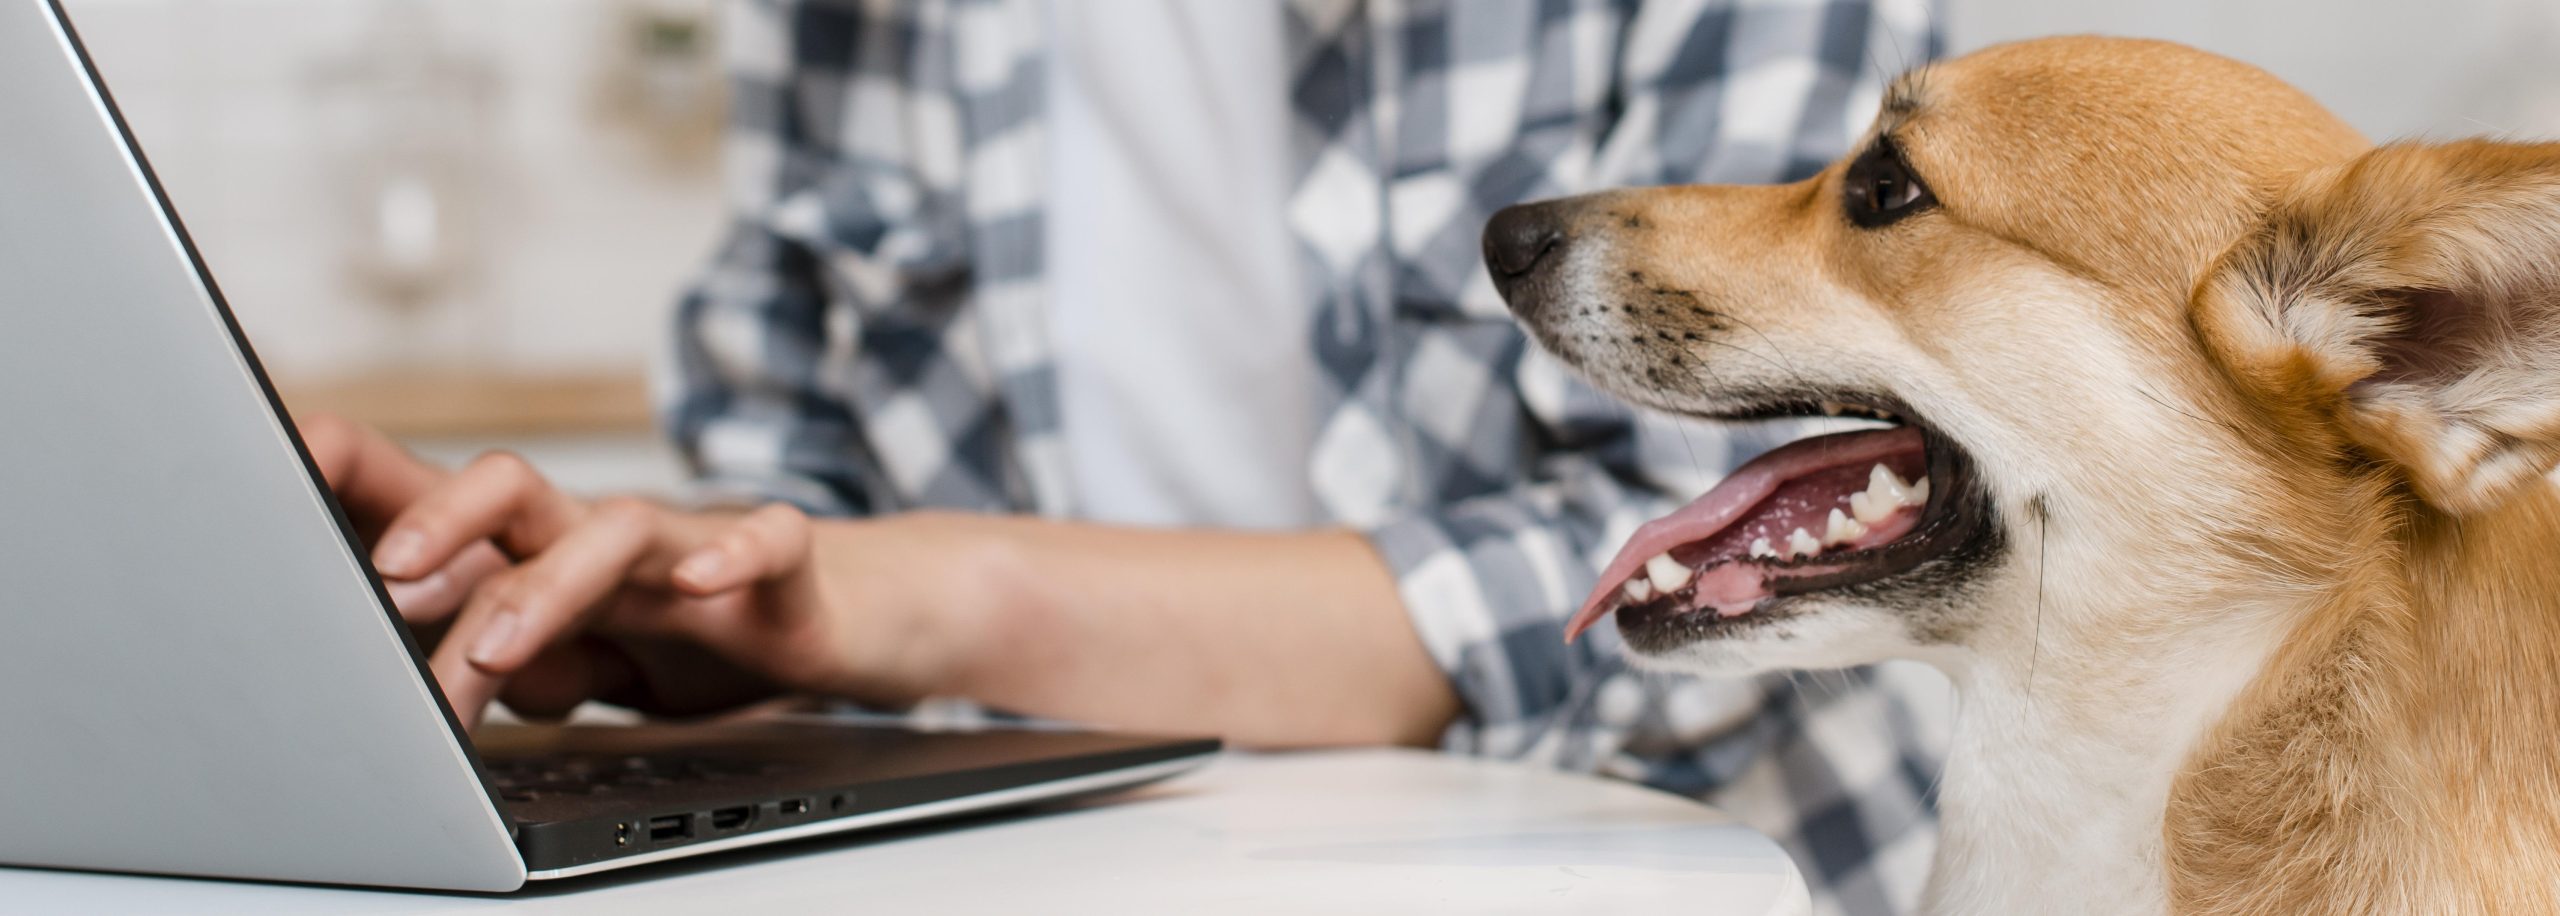 Personne qui travaille sur un ordinateur portable avec un chien corgi